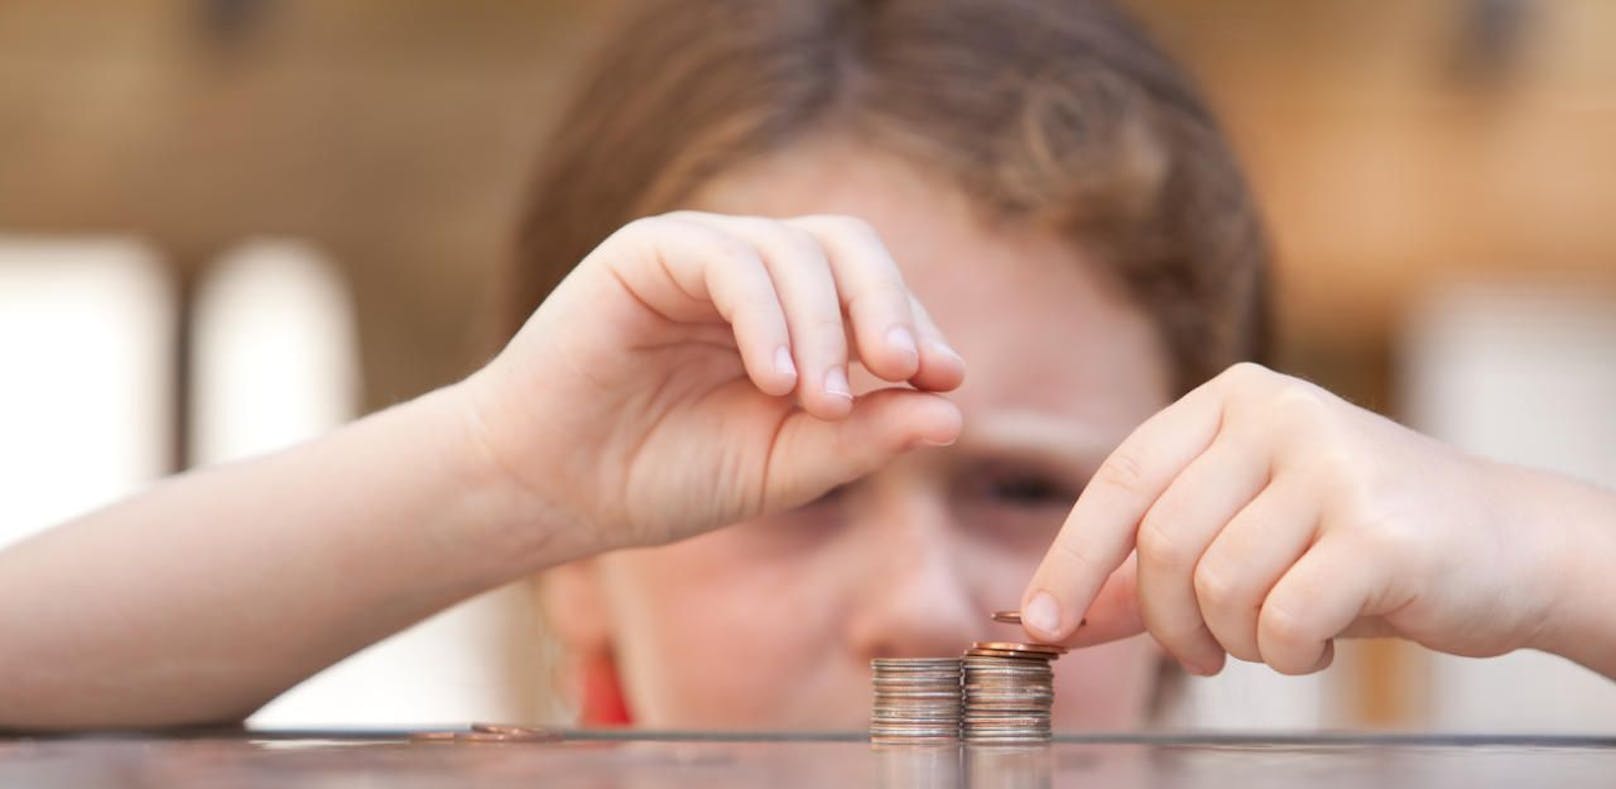 Ab wann soll man seinem Kind am besten Taschengeld zahlen und vor allem wie viel? (Symbolbild).